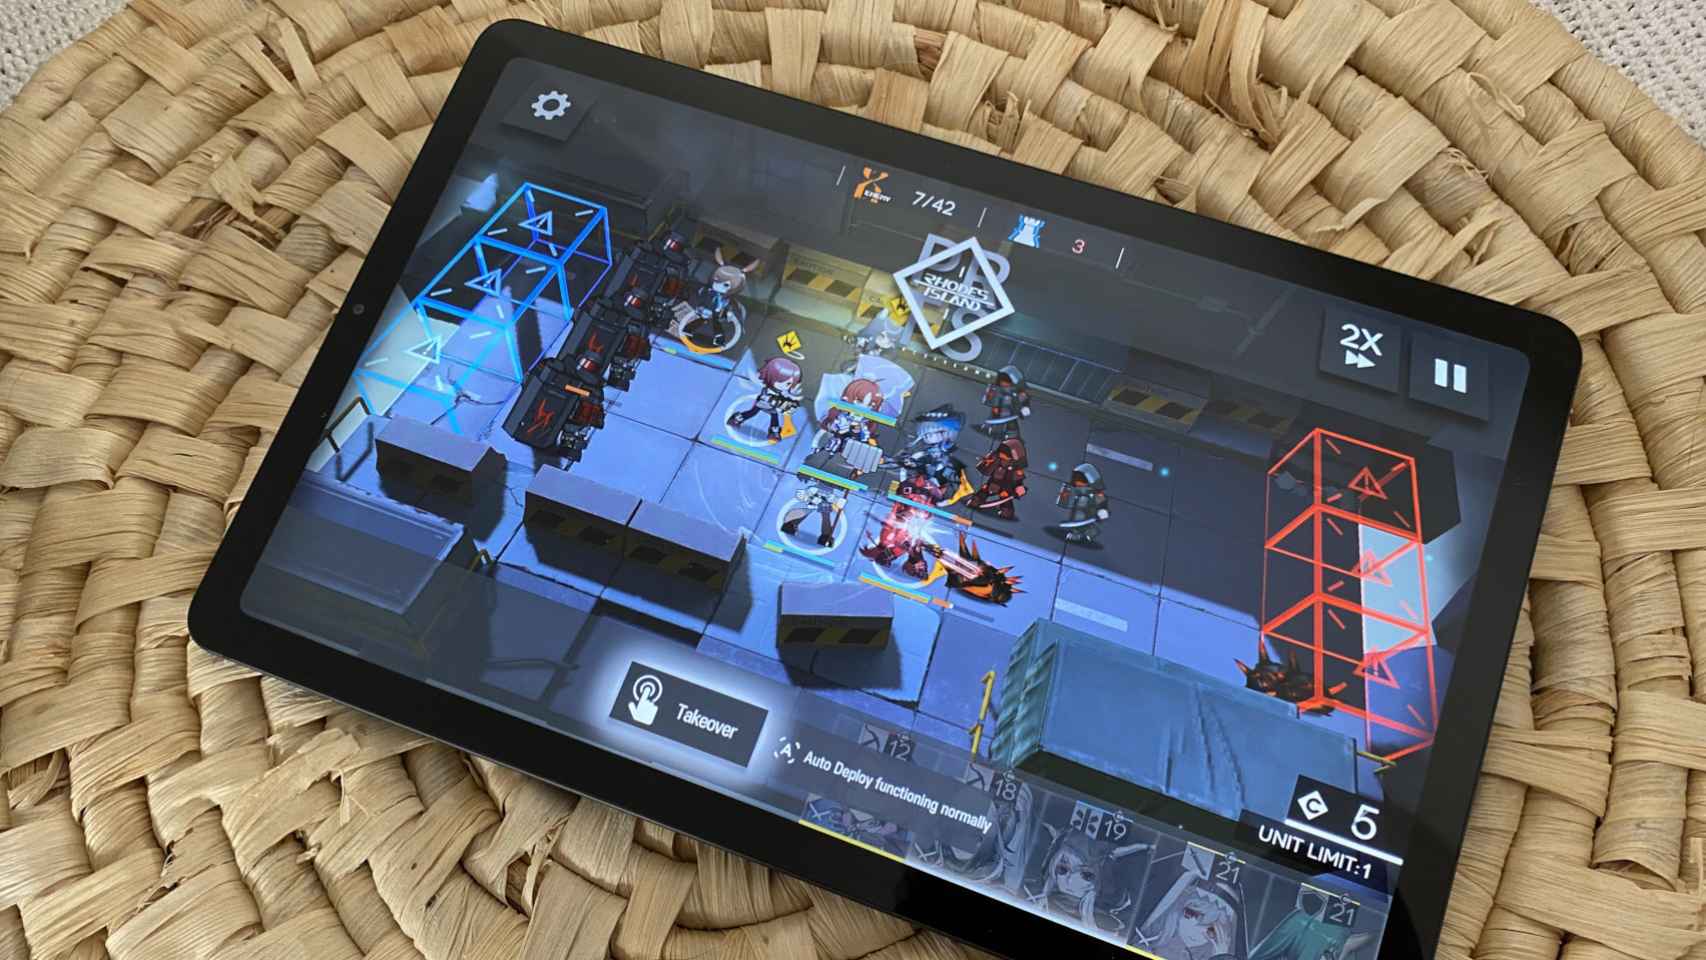 En juegos, el rendimiento de la Galaxy Tab S6 Lite es aceptable